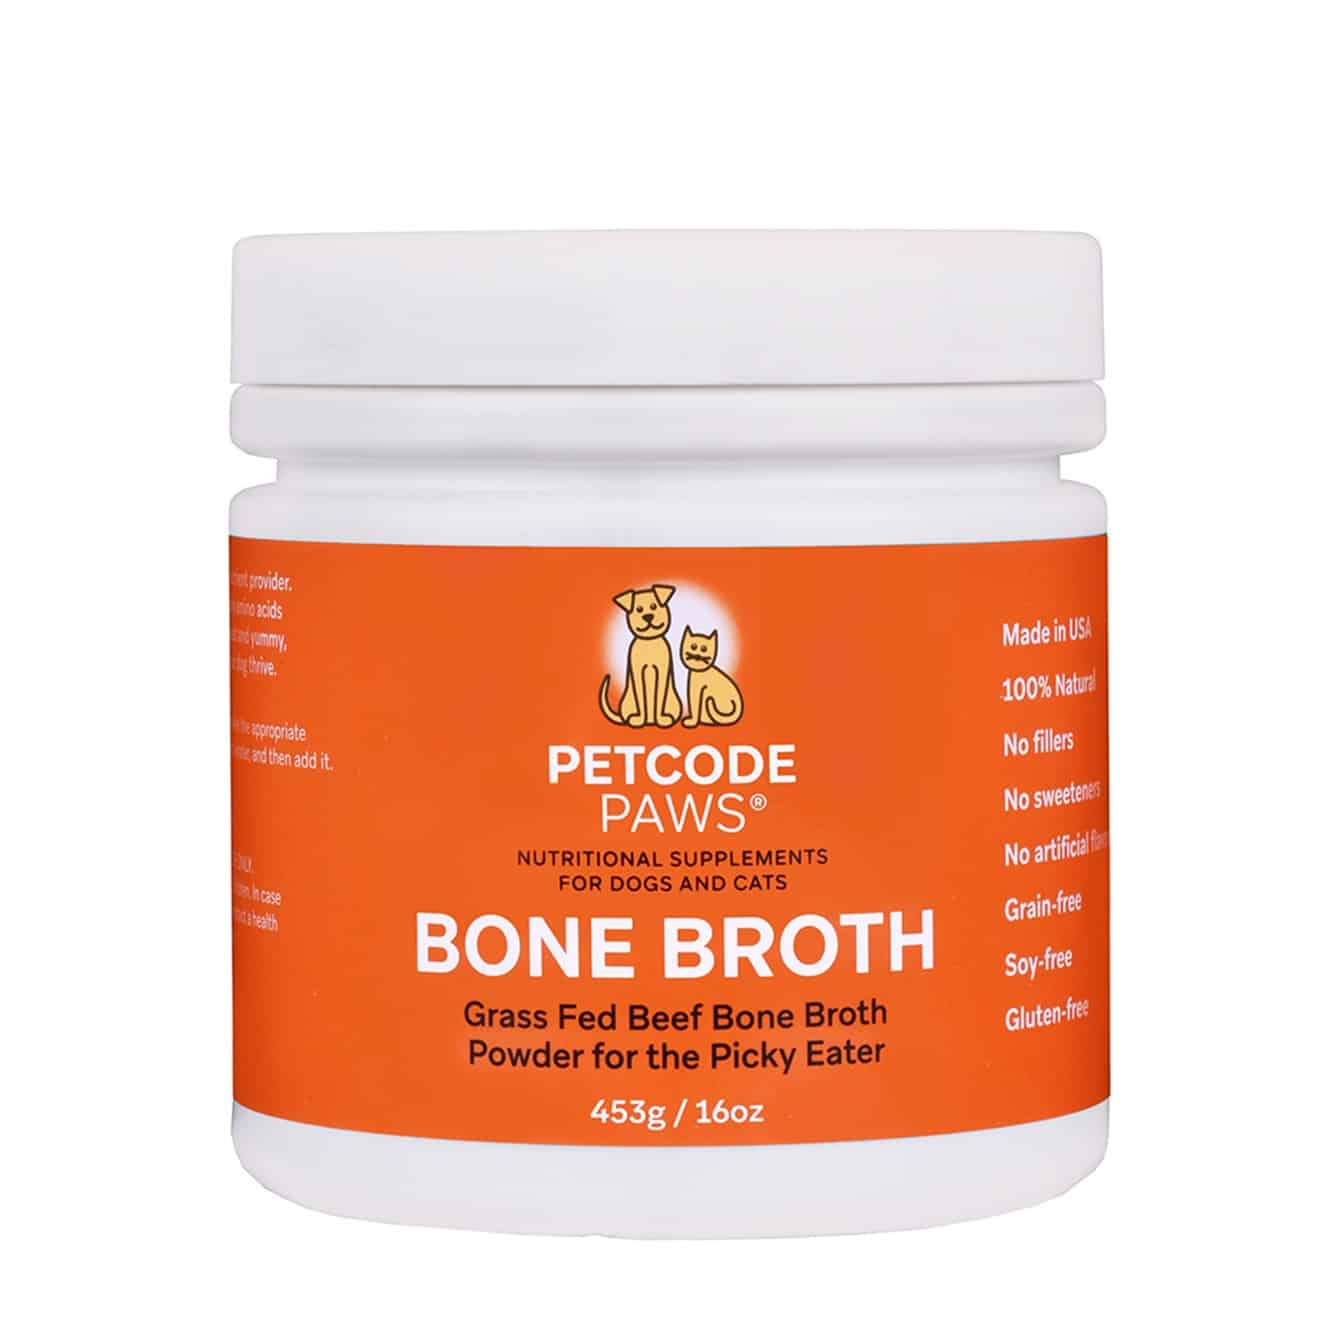 Petcode Paws Bone Broth